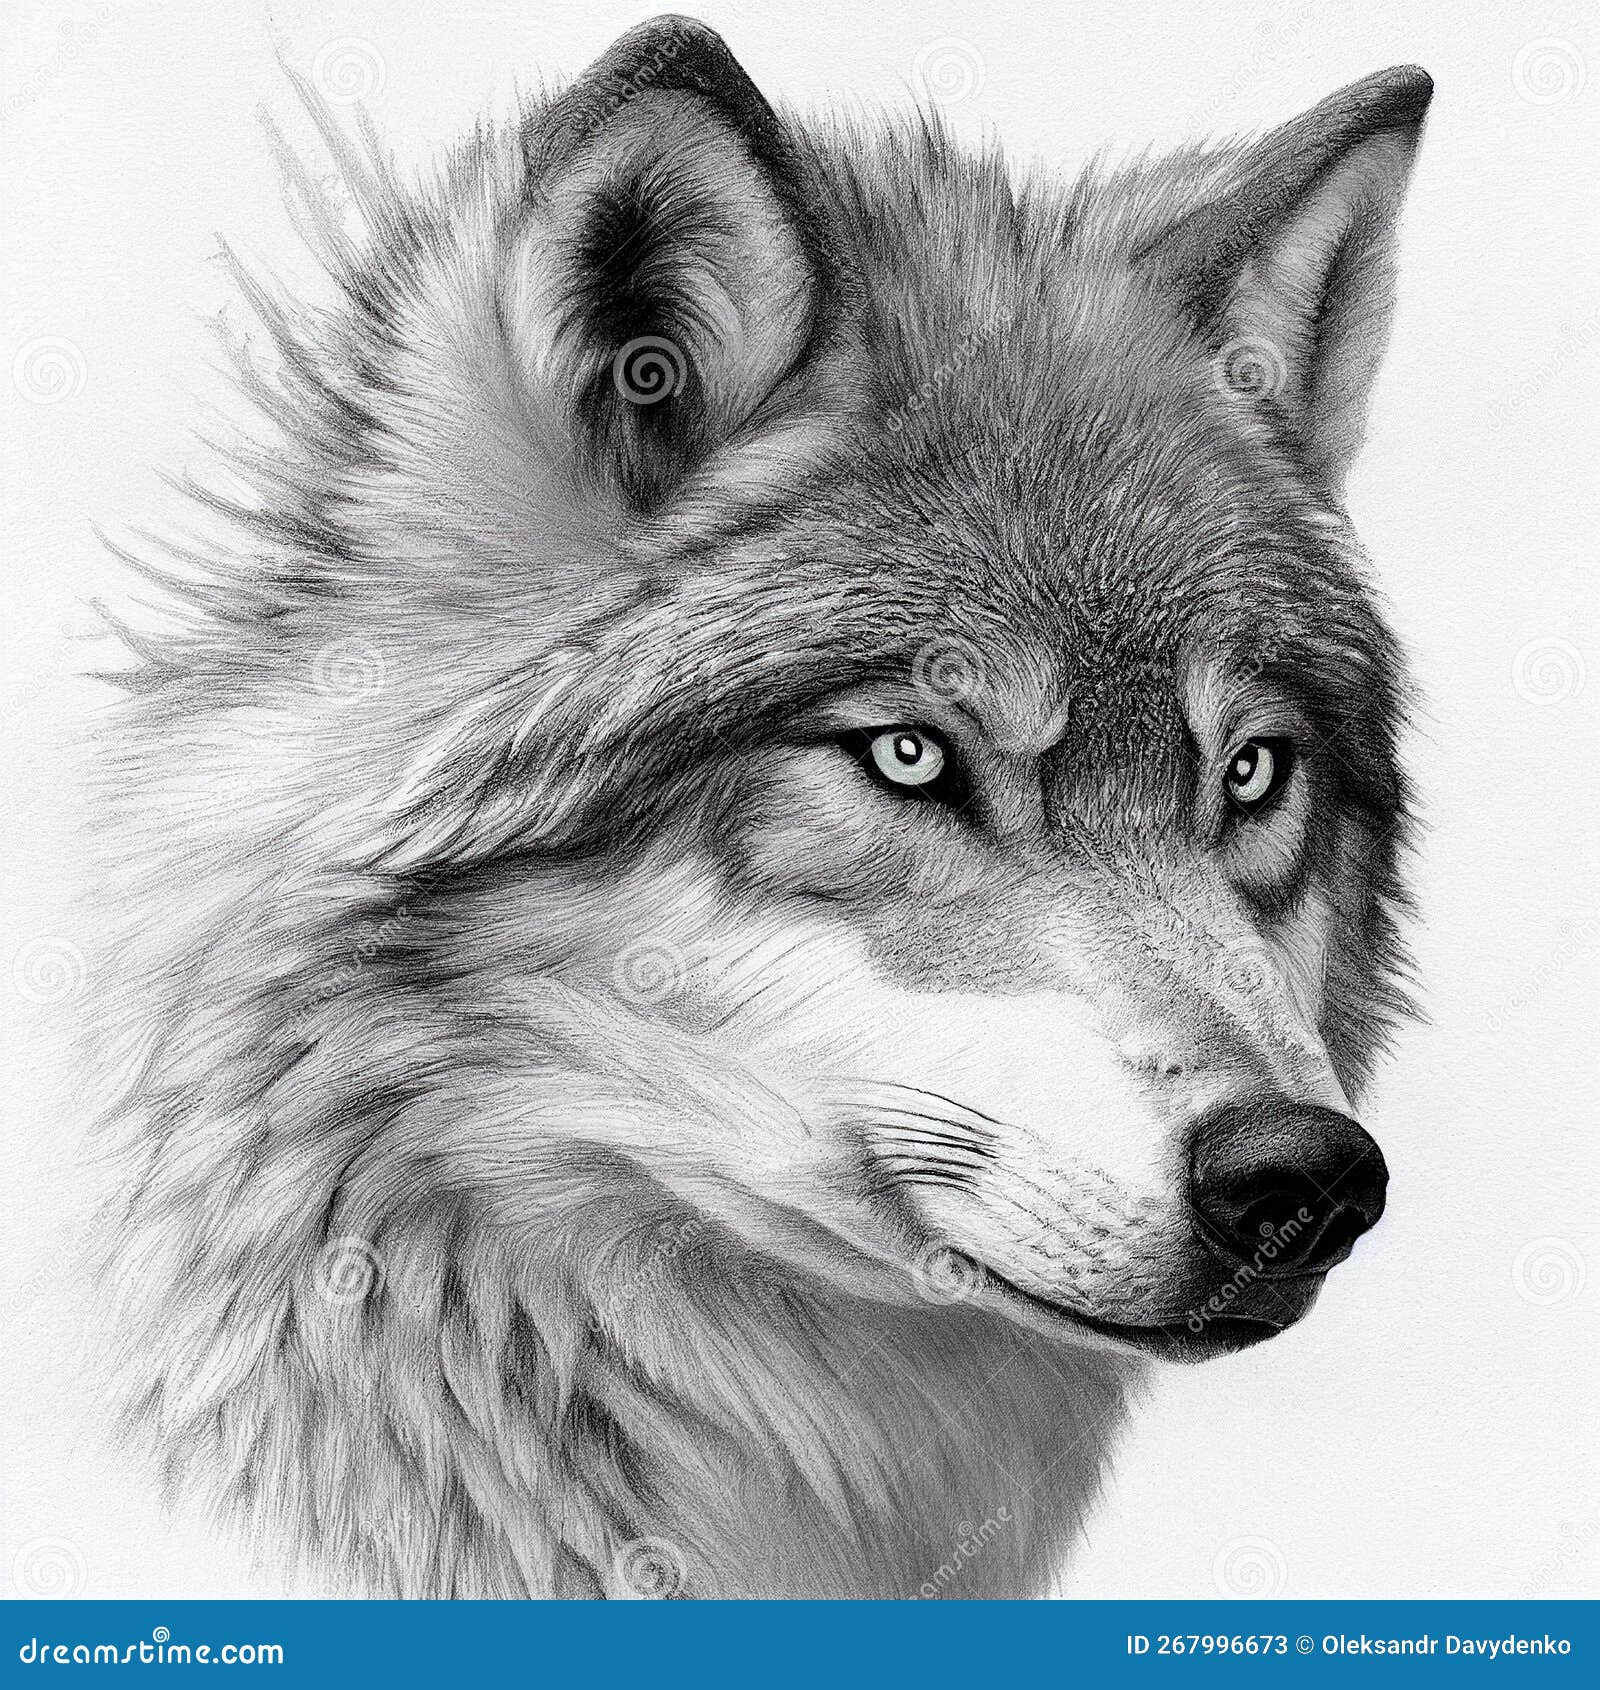 Northwestern Wolf Portrait by nchamunda on DeviantArt